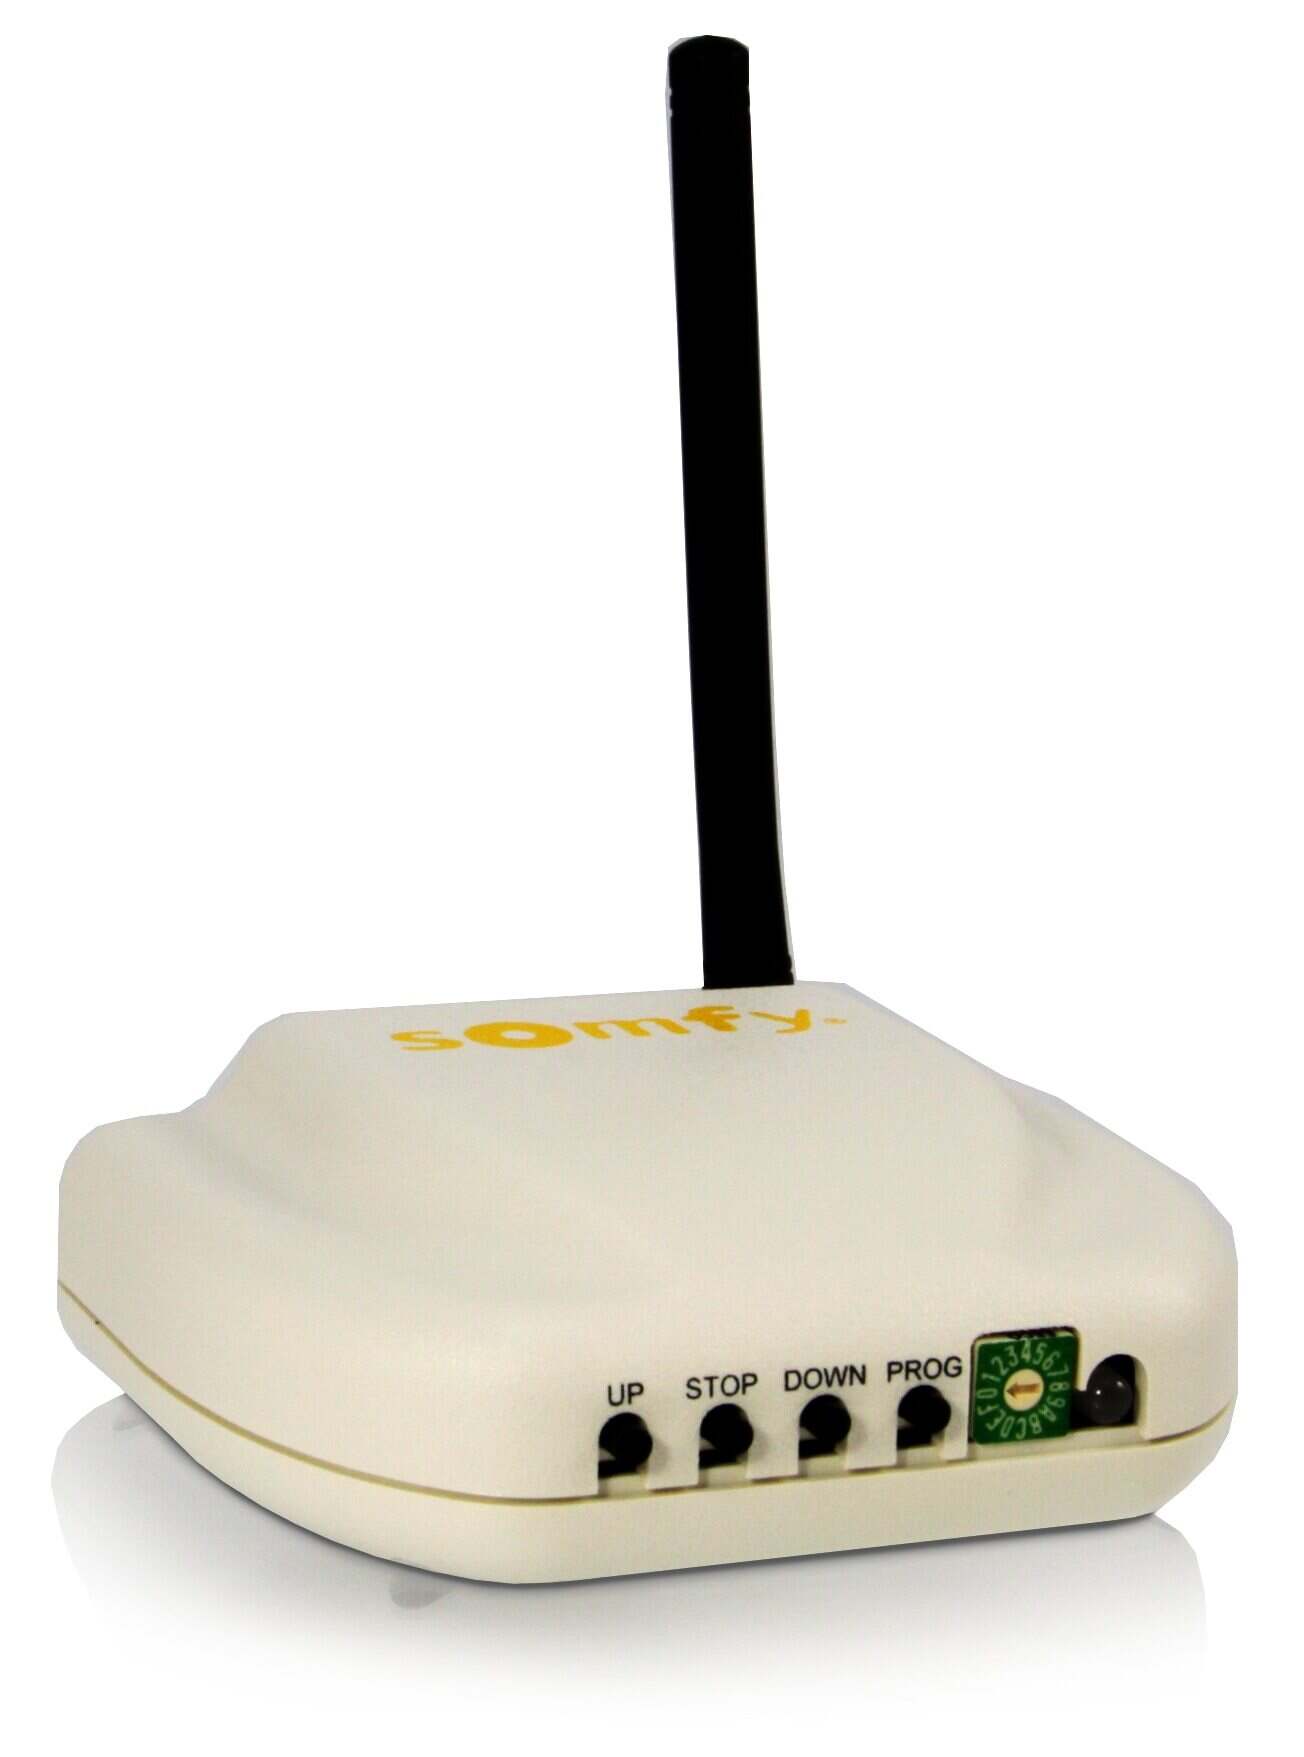 Connecter votre TV Box à votre modem via un Wi-Fi Bridge 